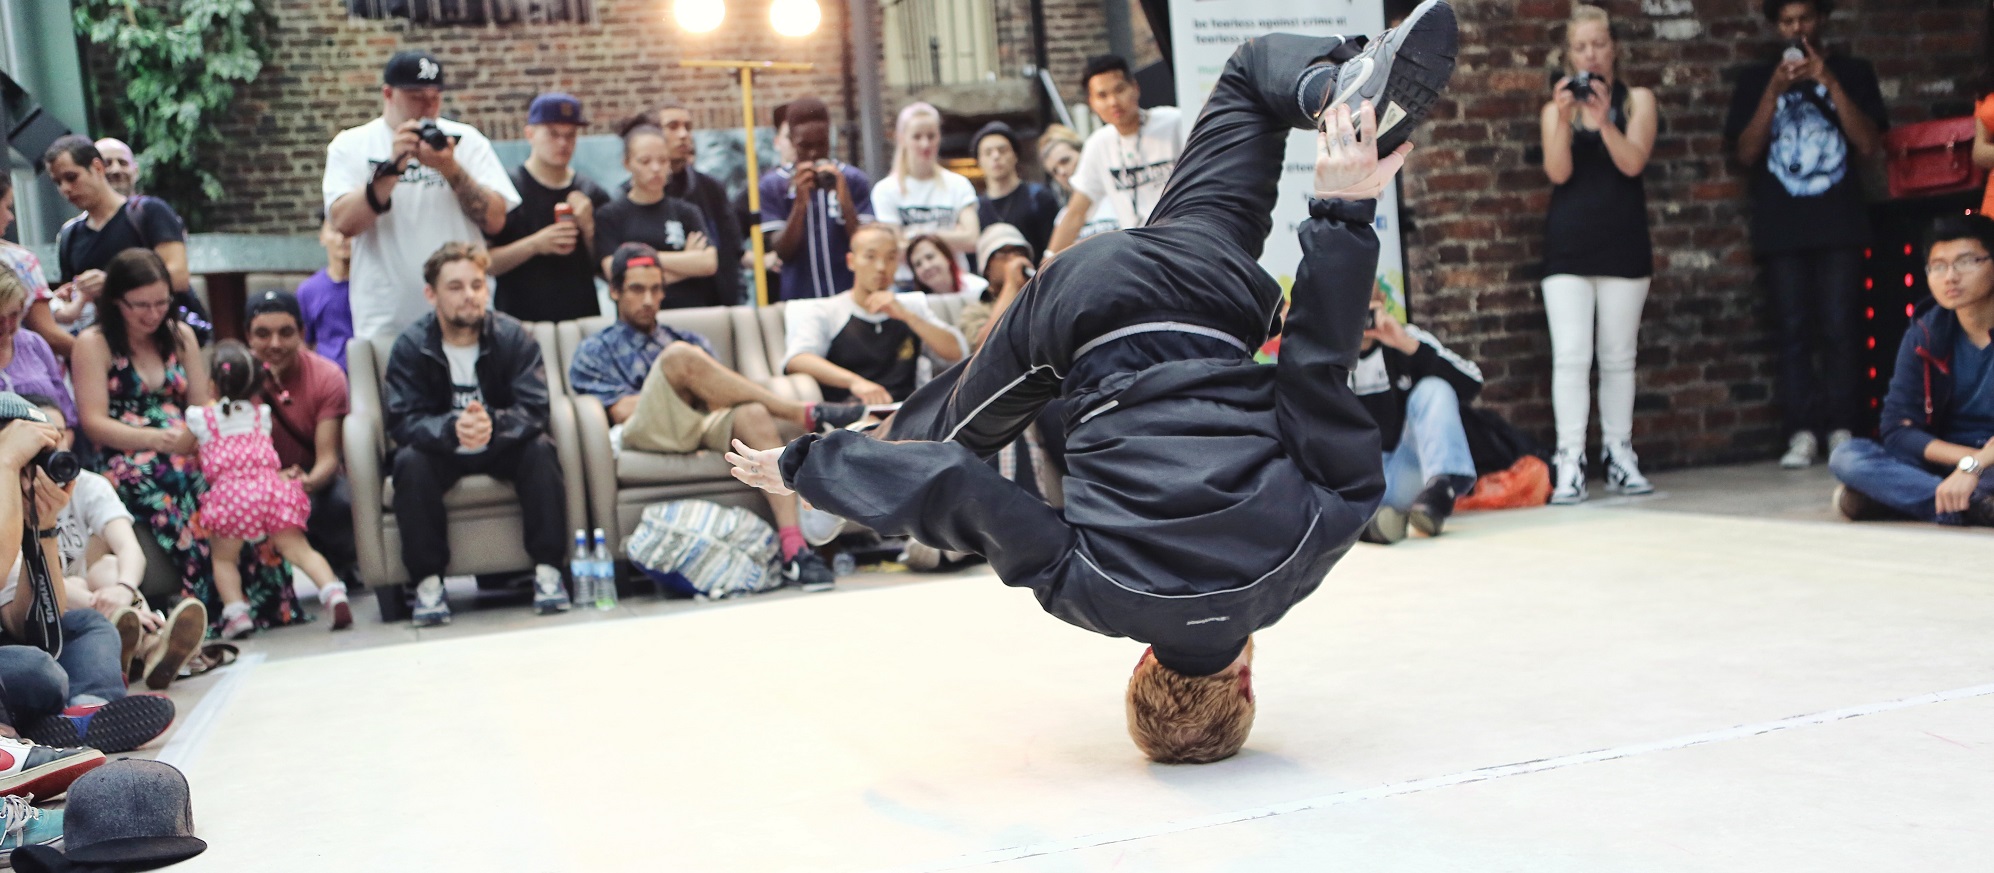 Ein junger Mensch macht einen Headspin / Breakdancemove vor diversem Publikum.